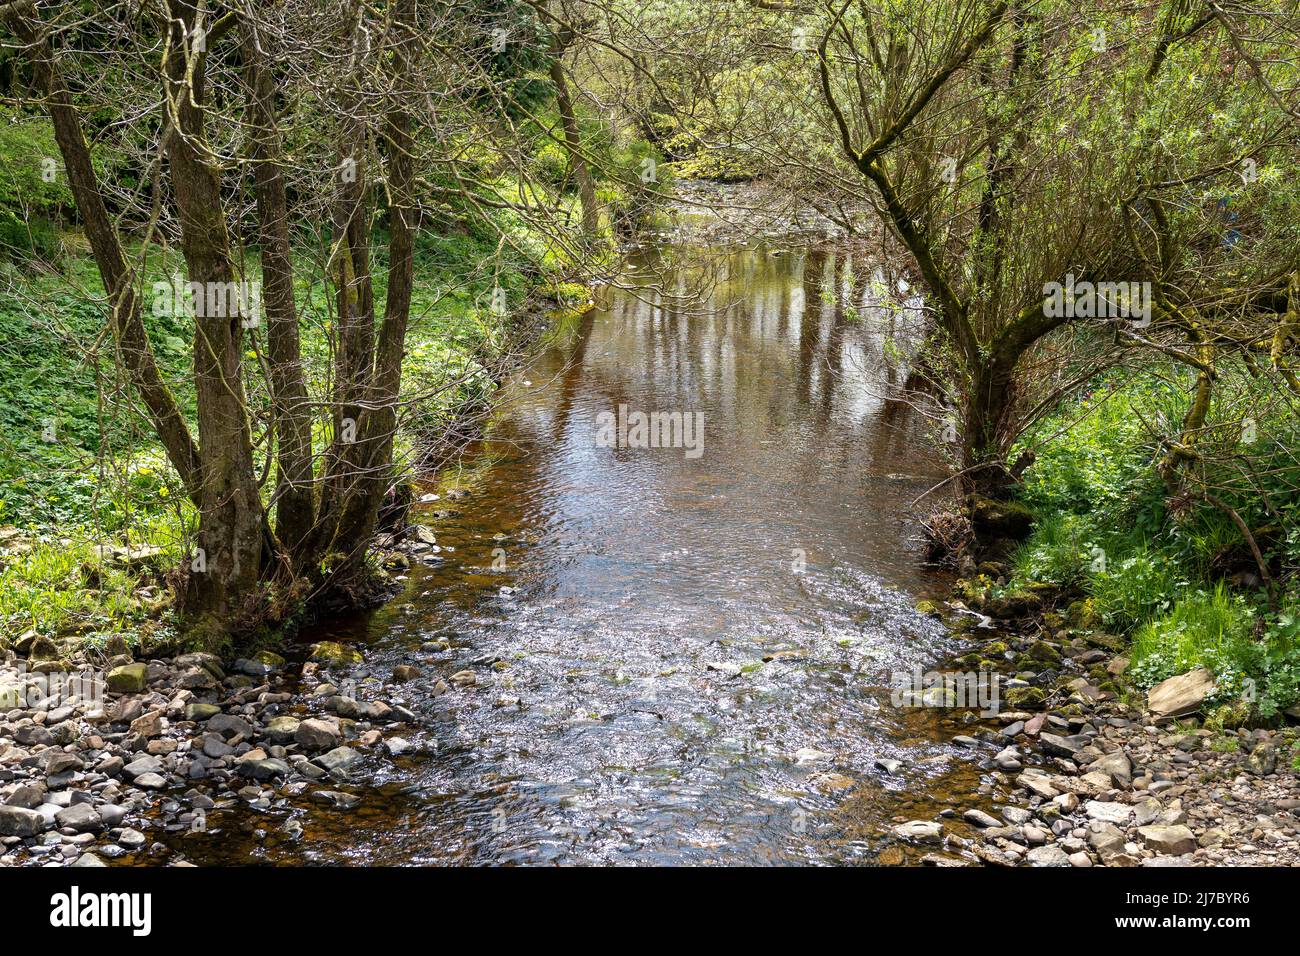 Ein friedlicher Ort an einem Northumbrian River im Frühling. Konzept, dem ganzen zu entfliehen. Quelle: Hazel Plater/Alamy Stockfoto